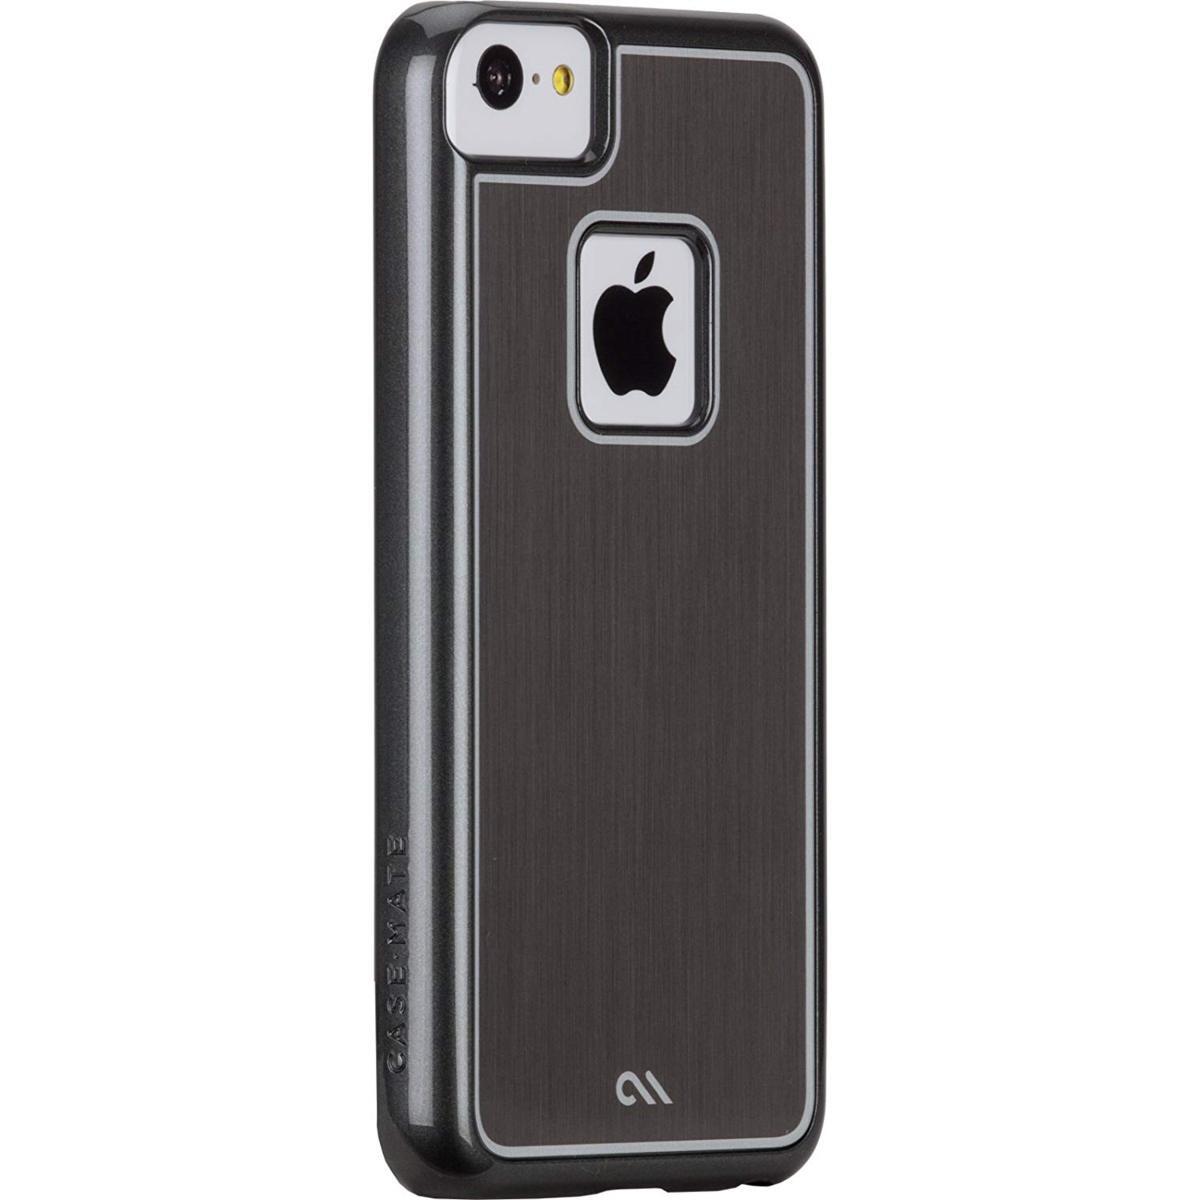  быстрое решение * бесплатная доставка )[ металл способ . задняя сторона . обработка сделал кейс ]Case-Mate iPhone 5c Brushed Aluminum Effect Sleek Case Silver